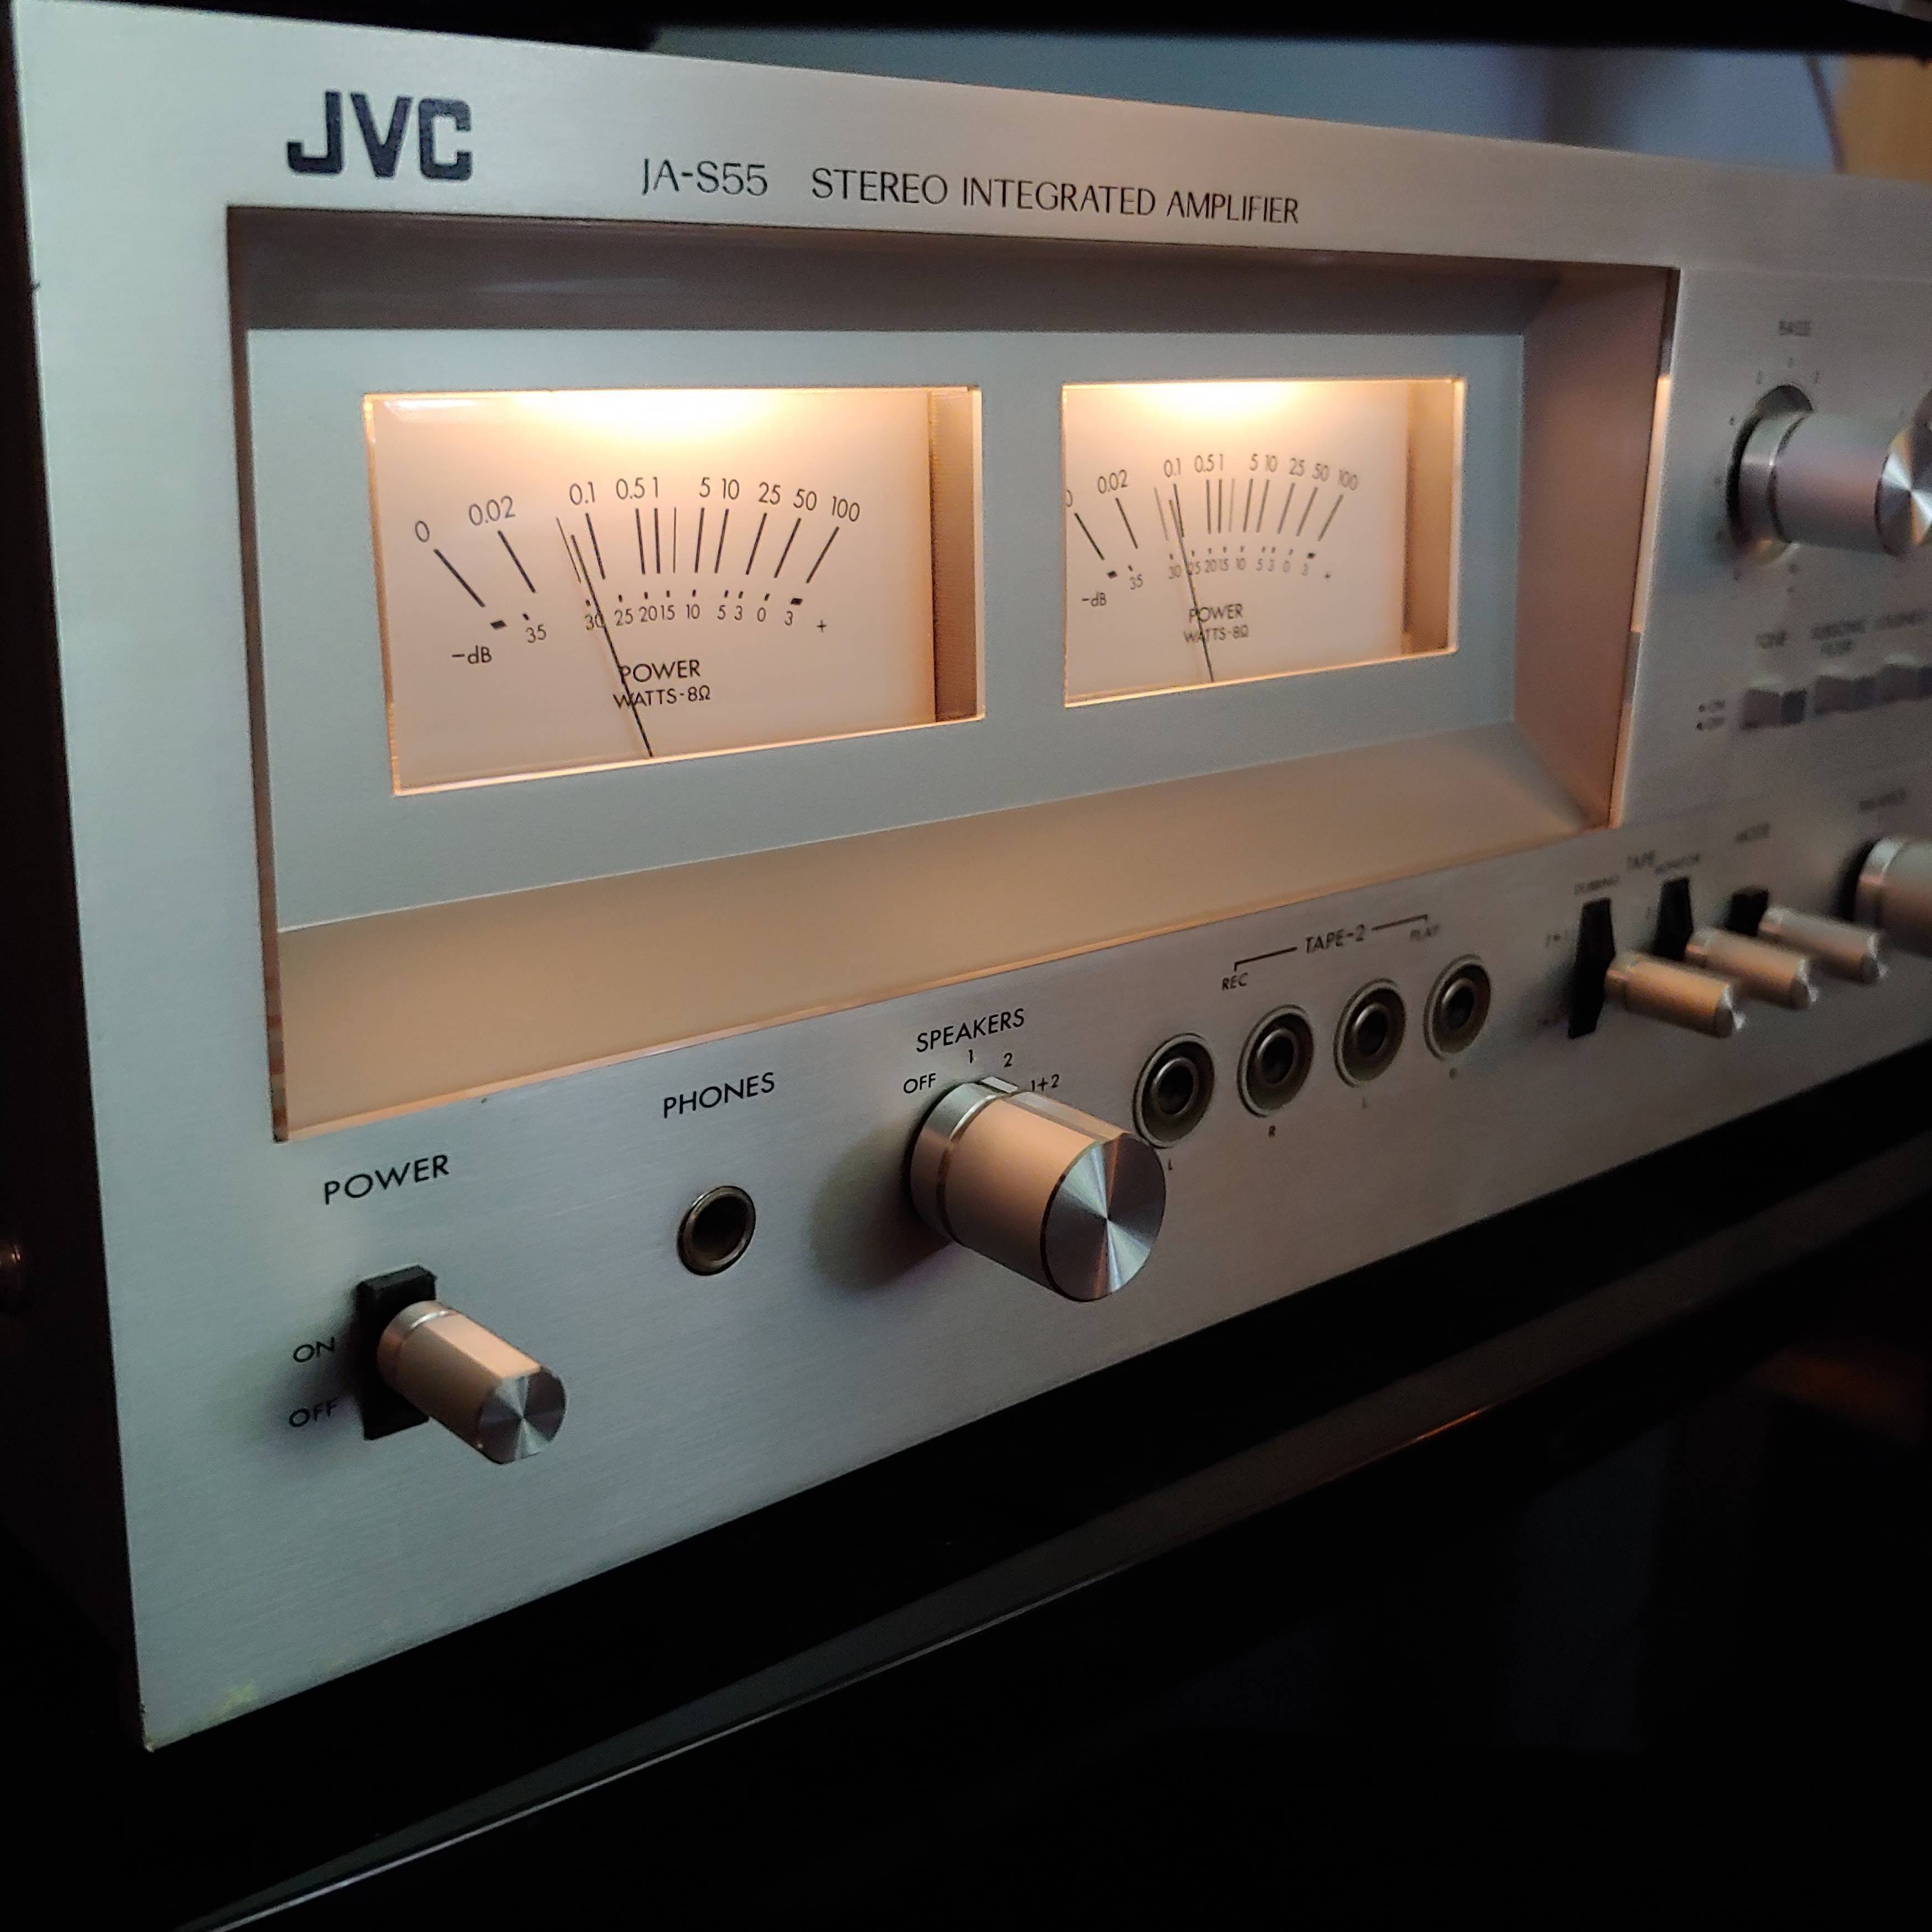 JVC JA-S55